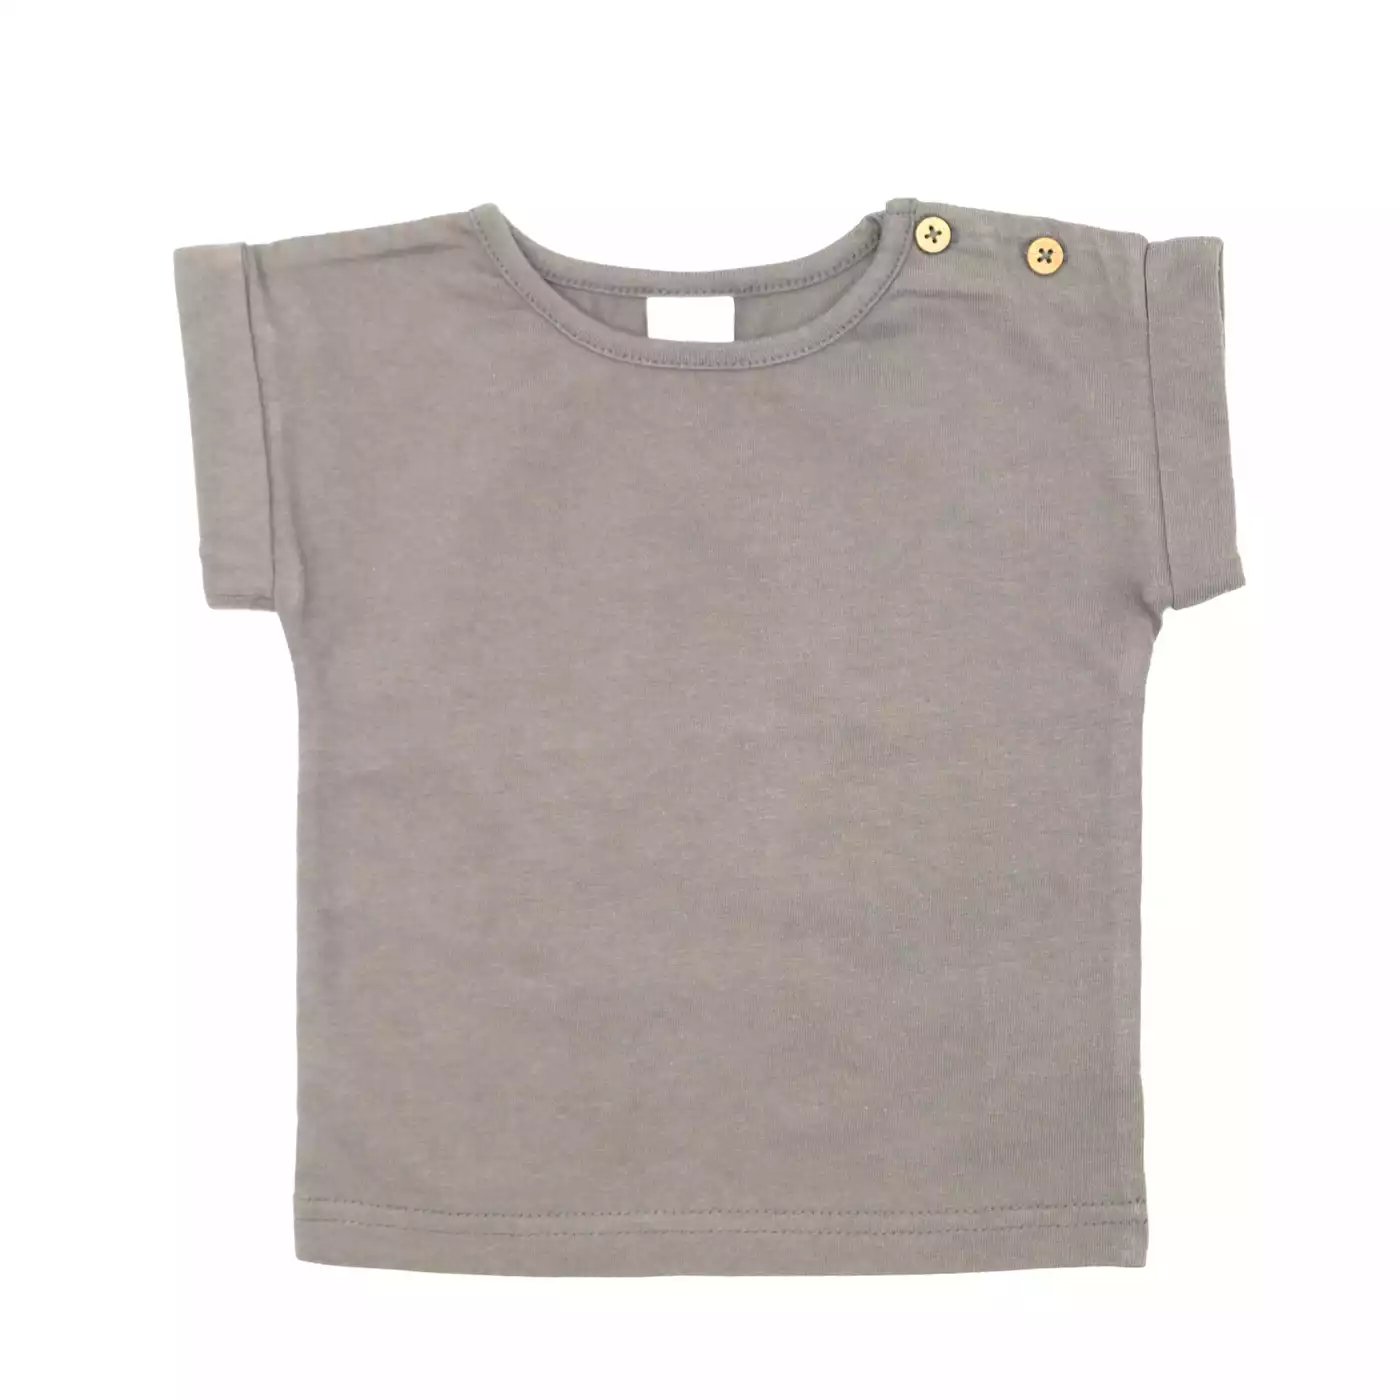 T-Shirt Basic Savannah LITTLE Grau Anthrazit 2005578448405 1